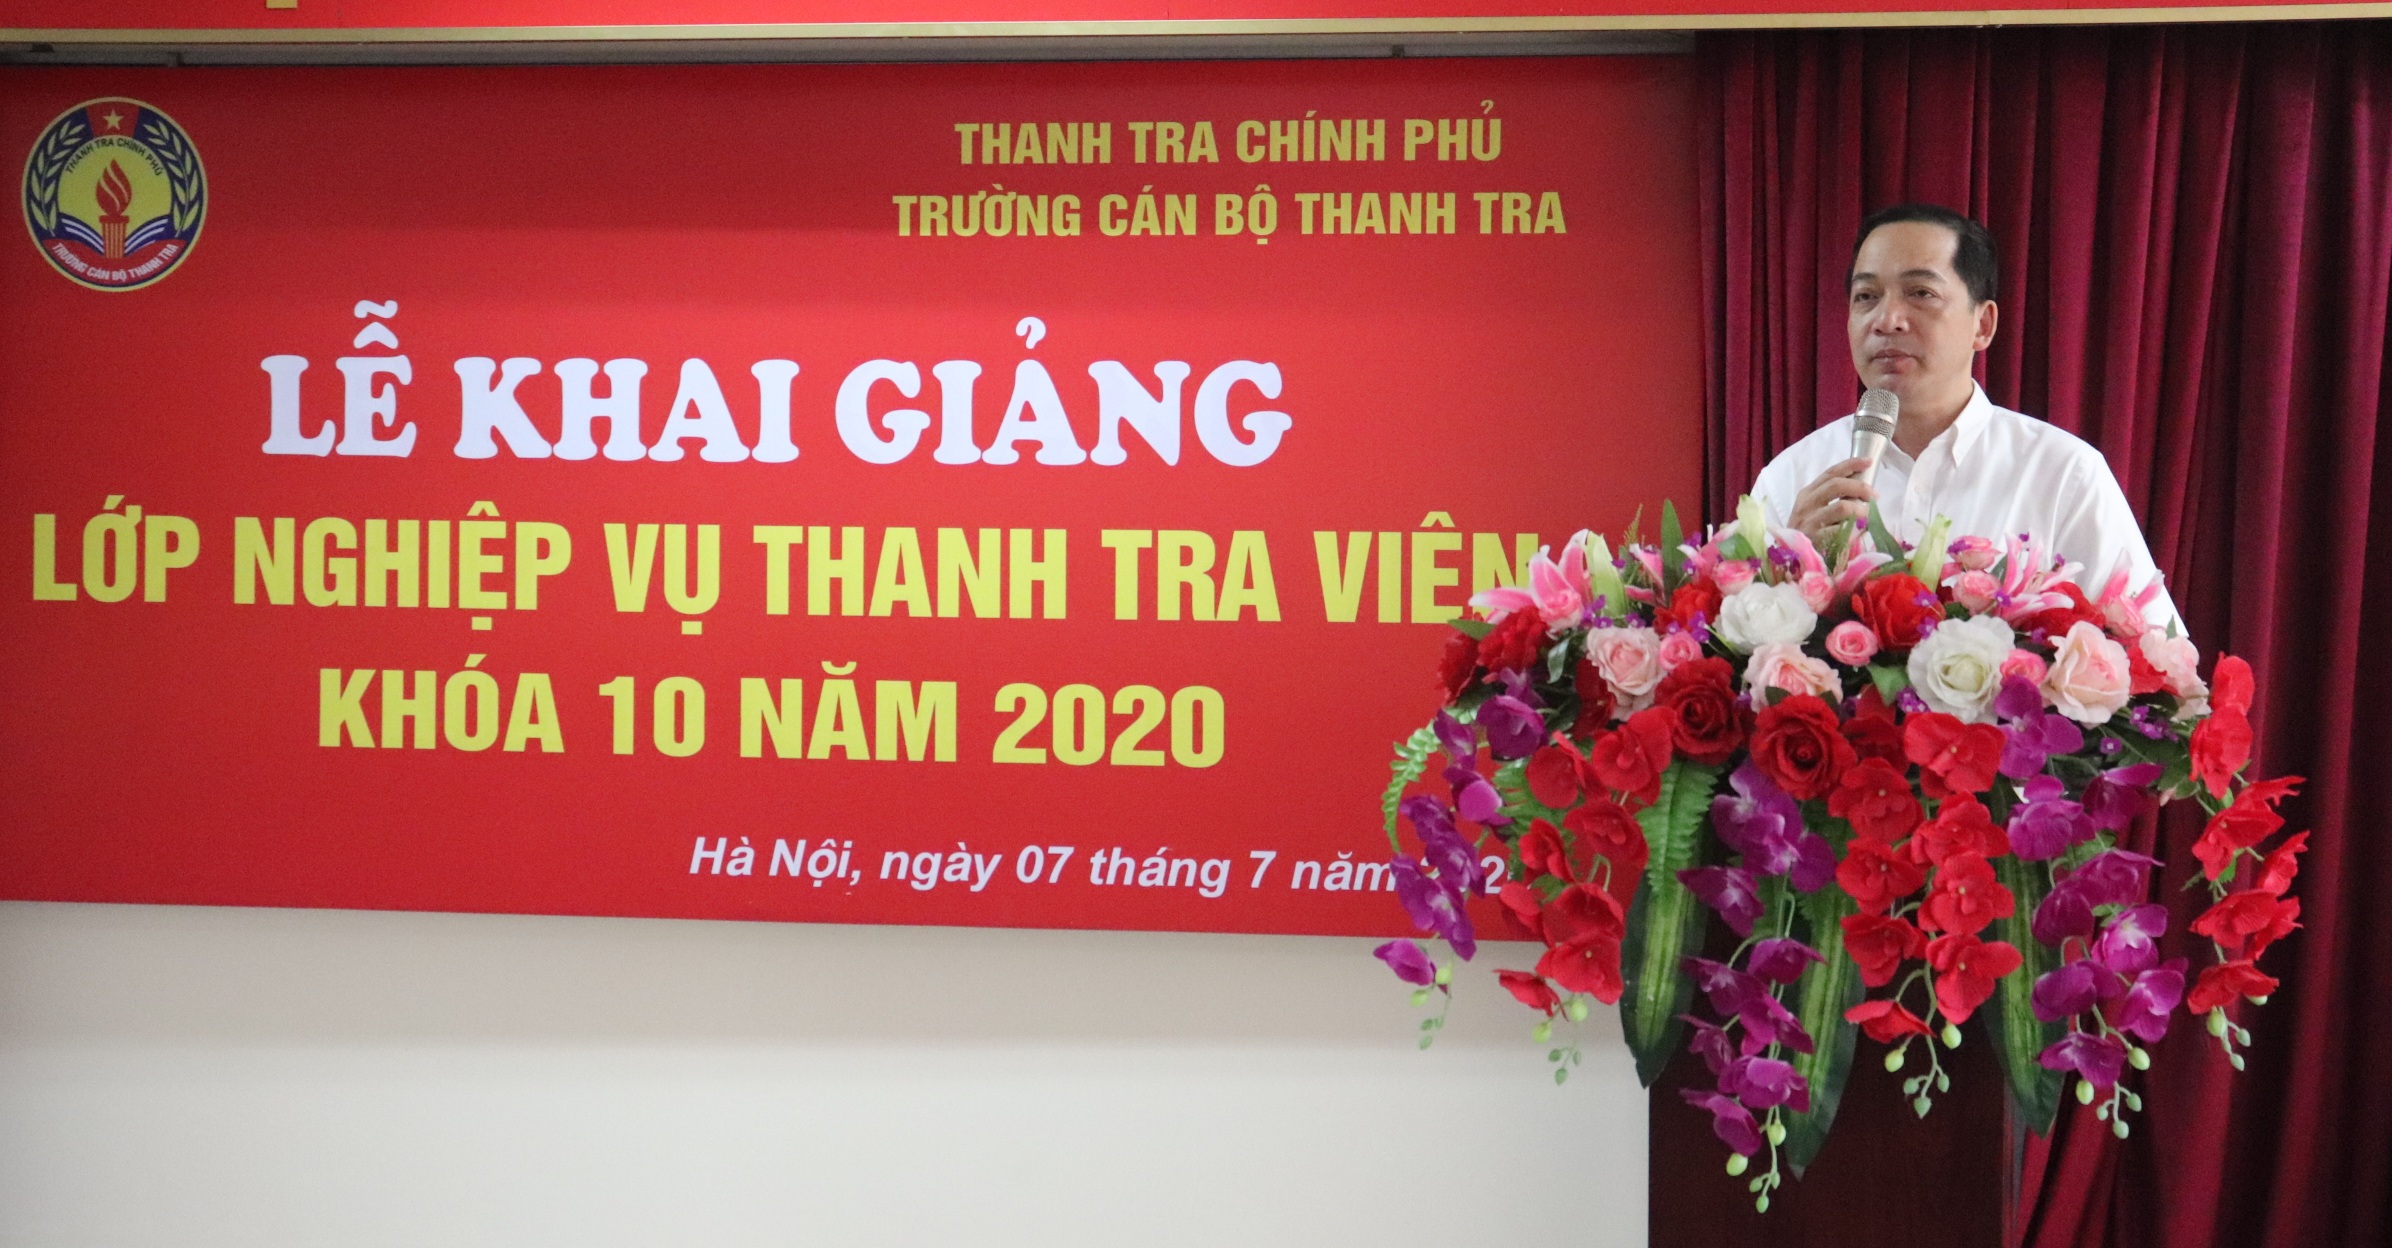 TS Nguyễn Huy Hoàng Phó Hiệu trưởng Nhà trường phát biểu khai giảng khóa học